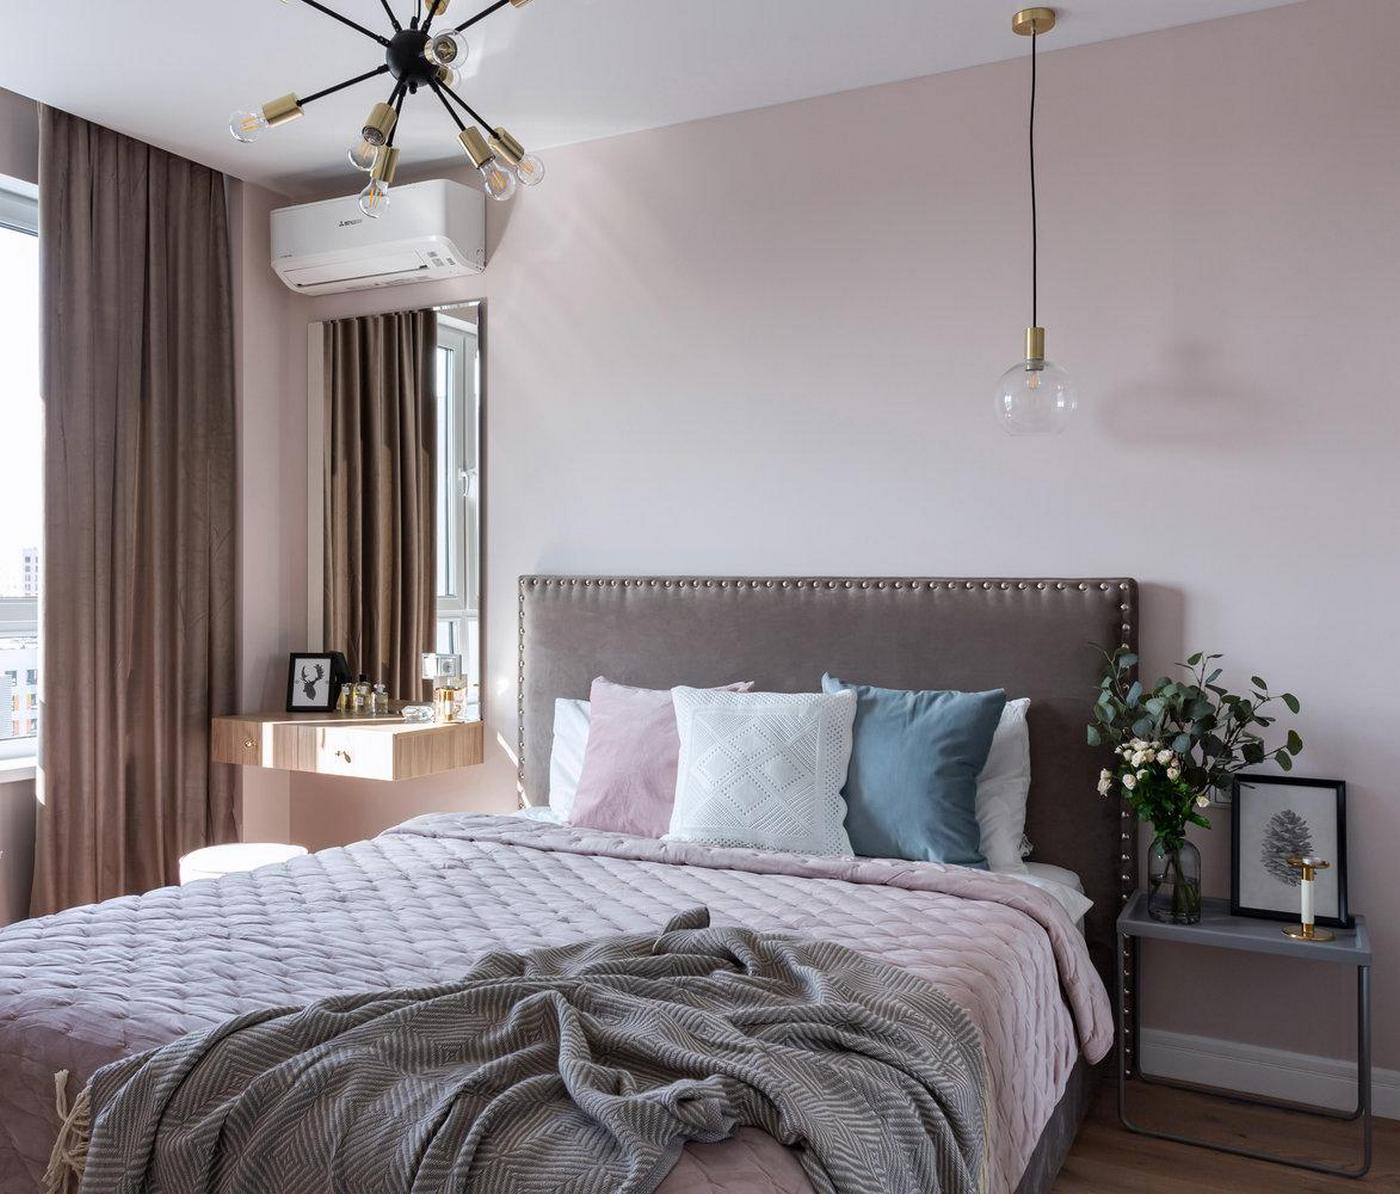 Phòng ngủ của cặp đôi được thiết kế với tông màu be pha hồng, đầu giường màu xám vững chãi. Góc phải cạnh ô cửa sổ đầy nắng là bàn phấn gắn tường kết hợp gương soi cỡ lớn.